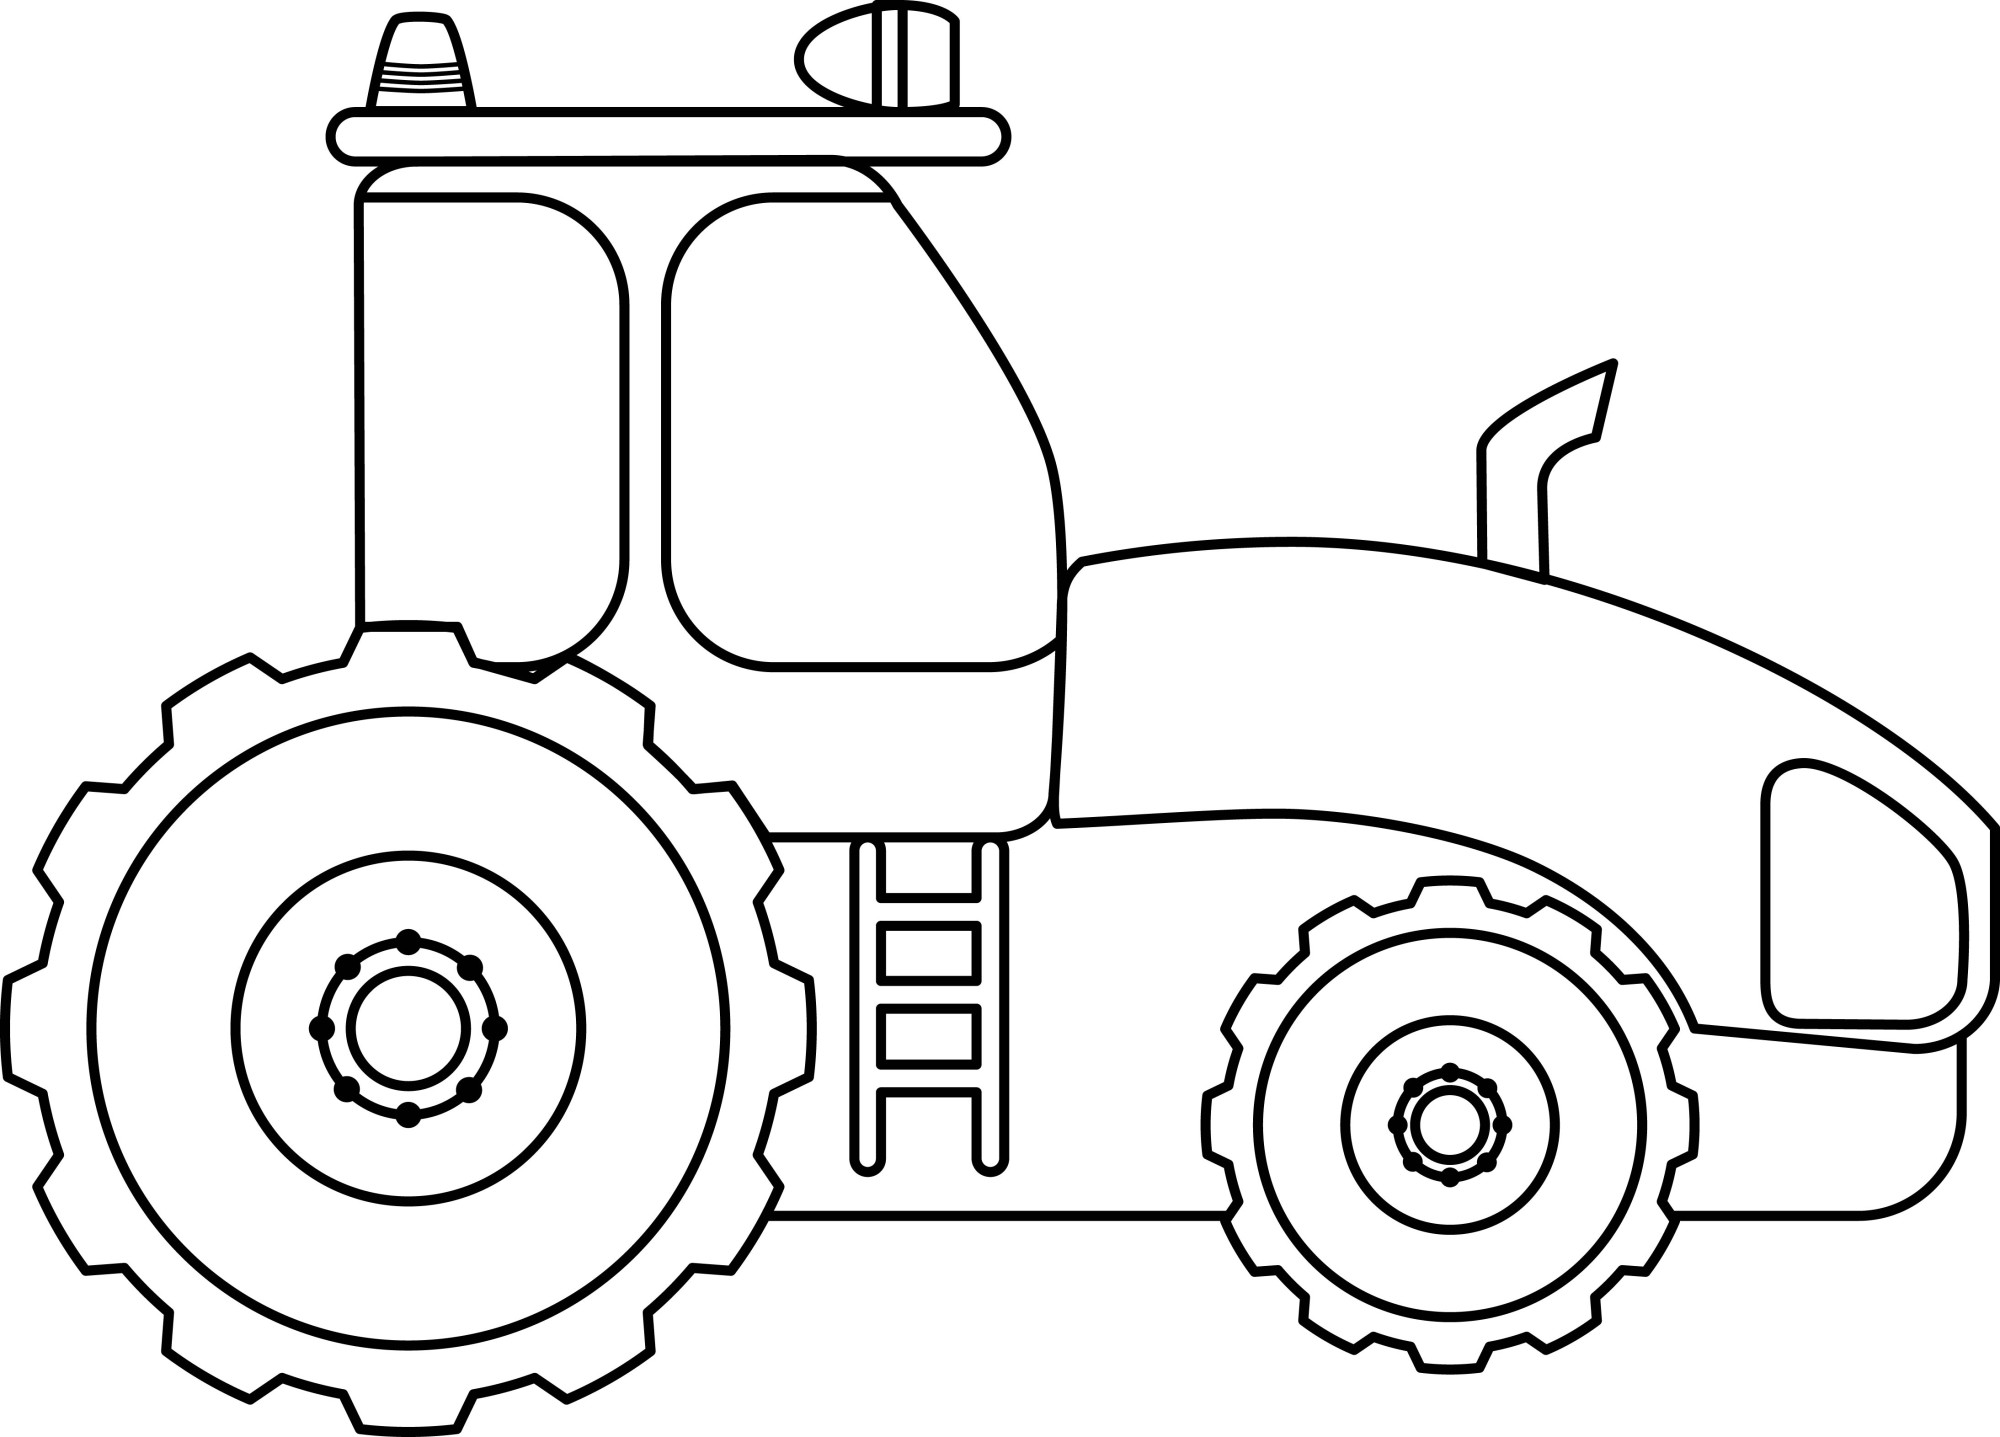 Раскраска для детей: строительный трактор с прожектором на крыше